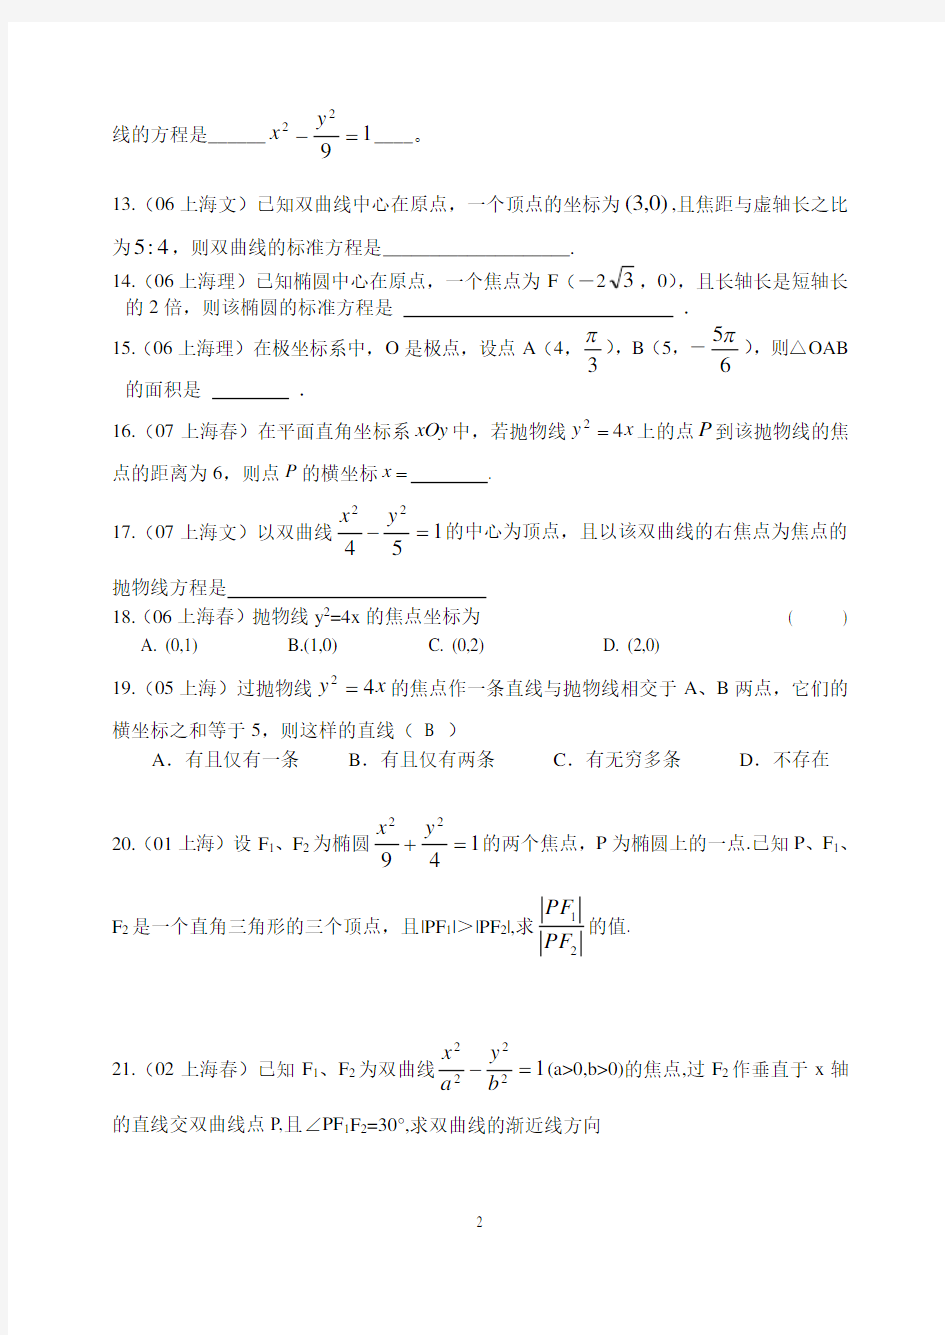 历年上海高考试题(圆锥曲线)